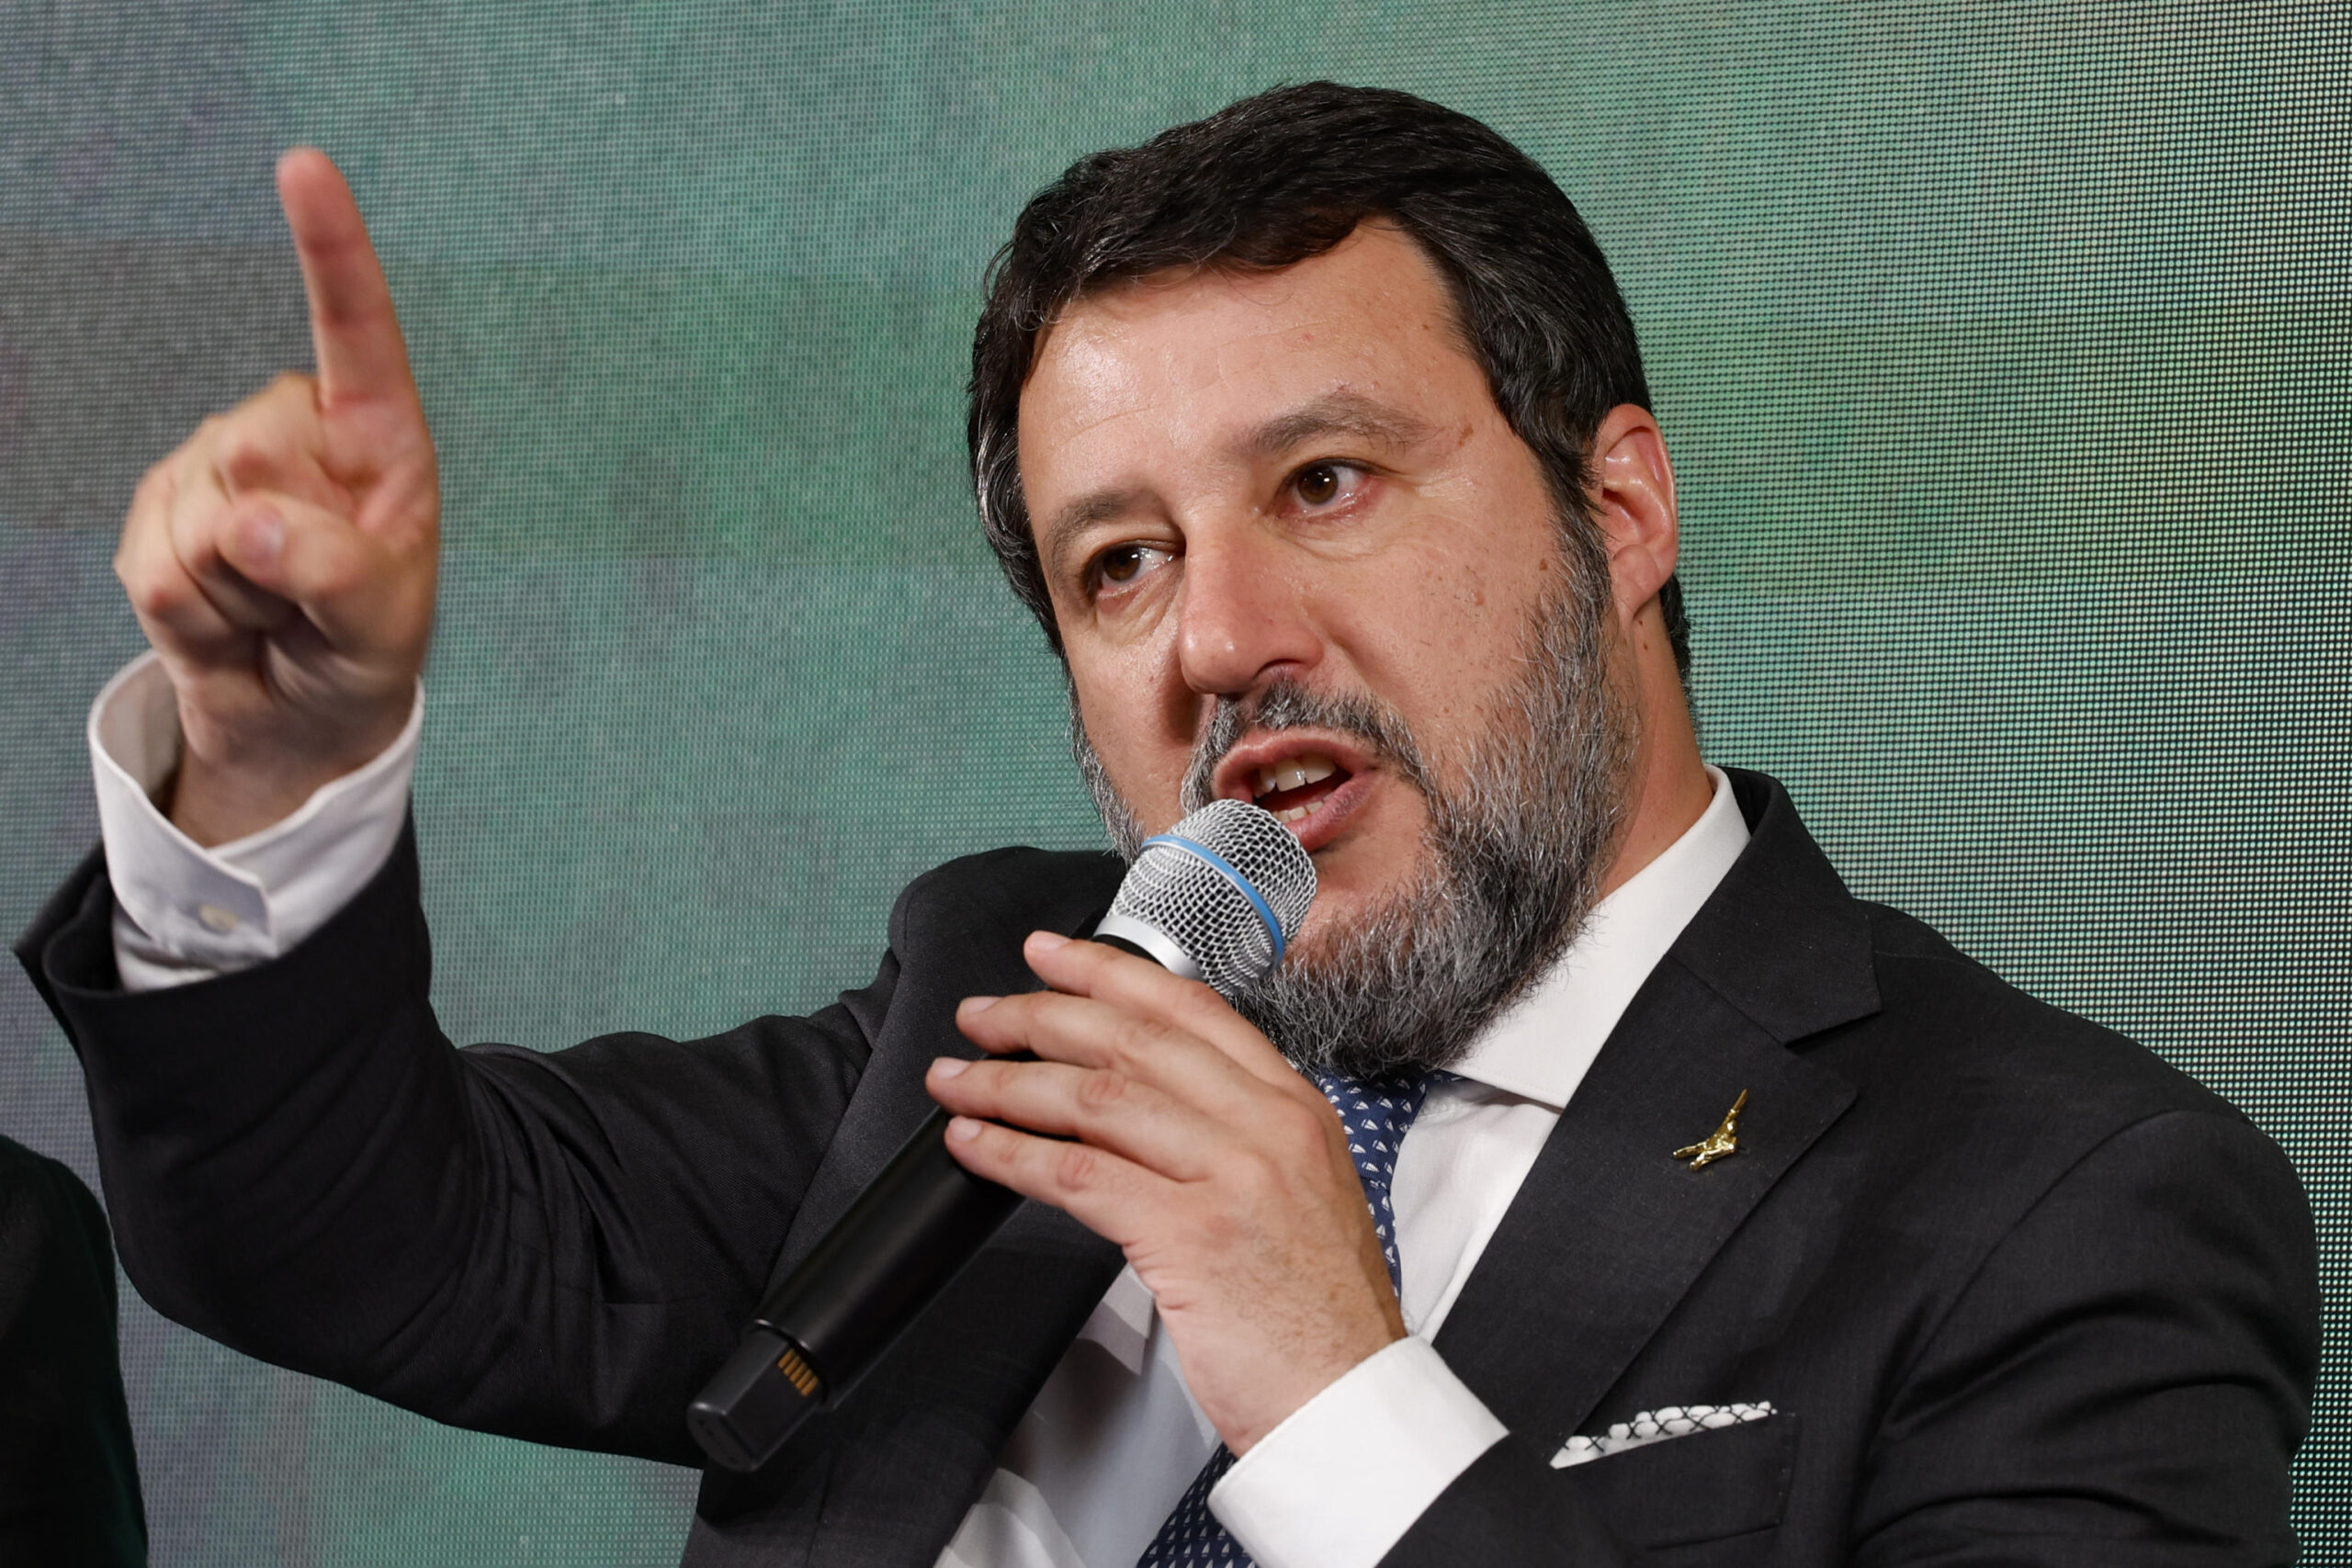 Trasporti, Salvini convoca un tavolo per evitare lo sciopero